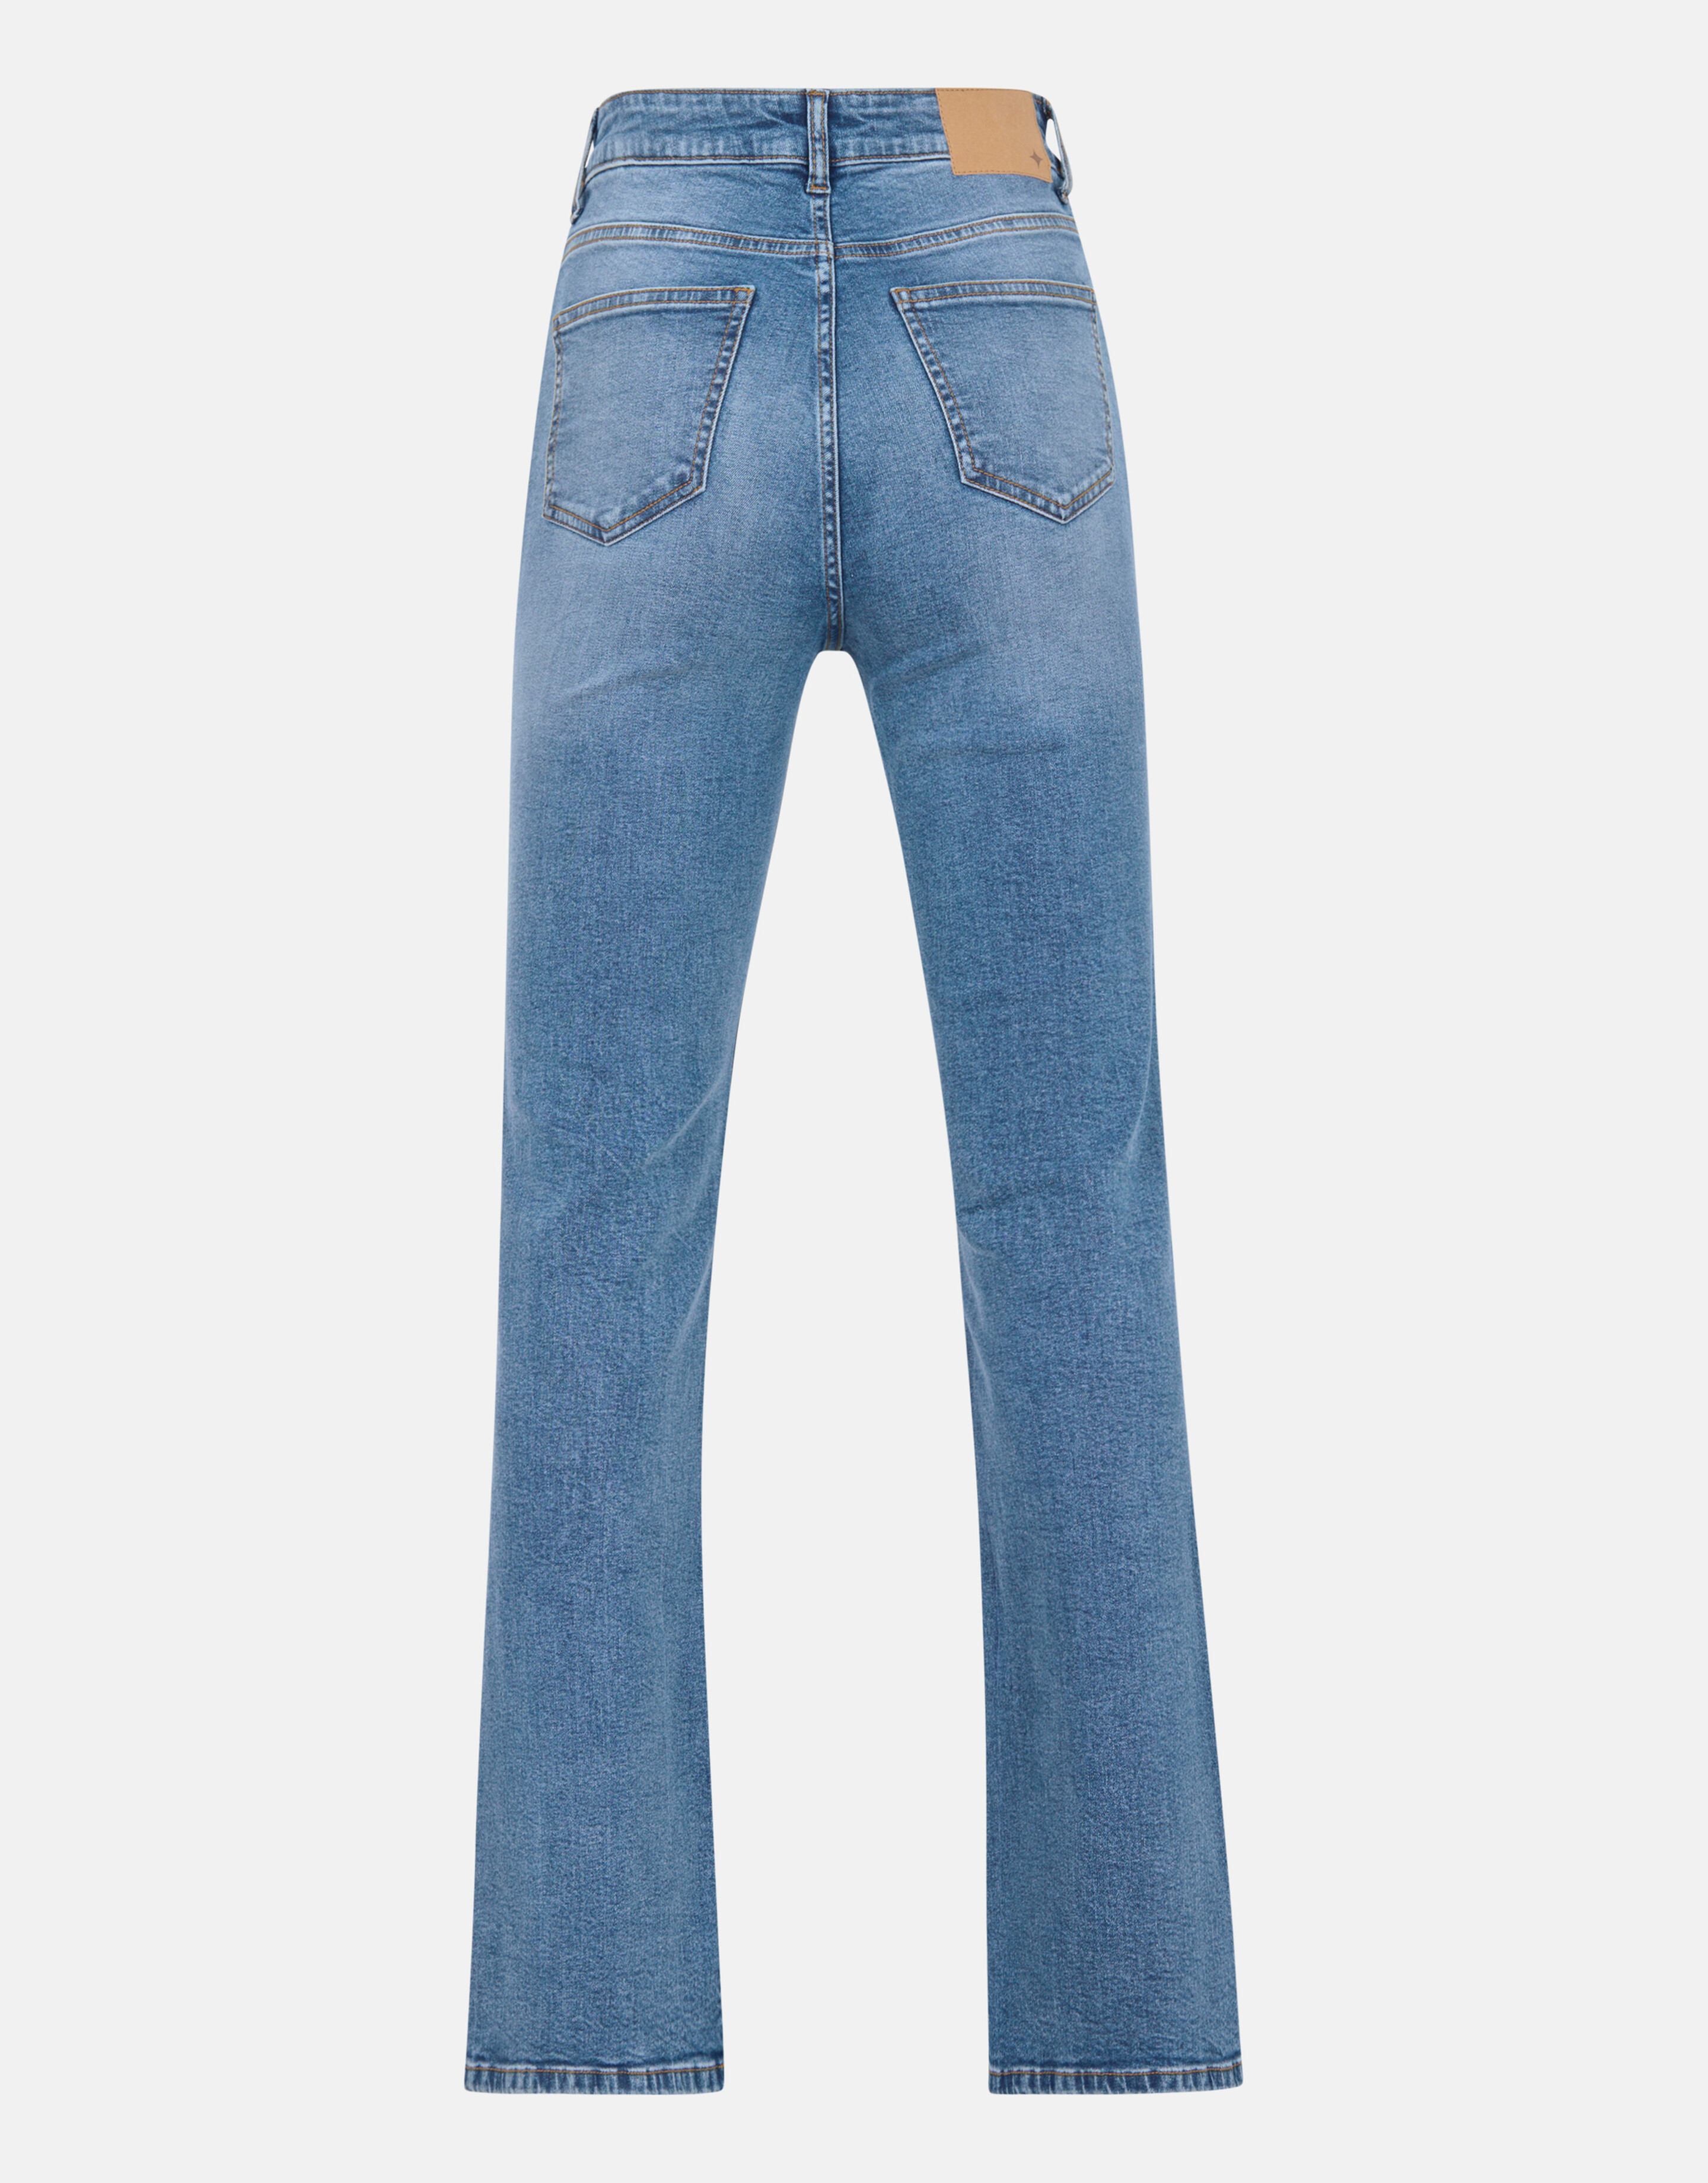 Ausgestellte Denim-Jeans Mediumstone L34 SHOEBY WOMEN